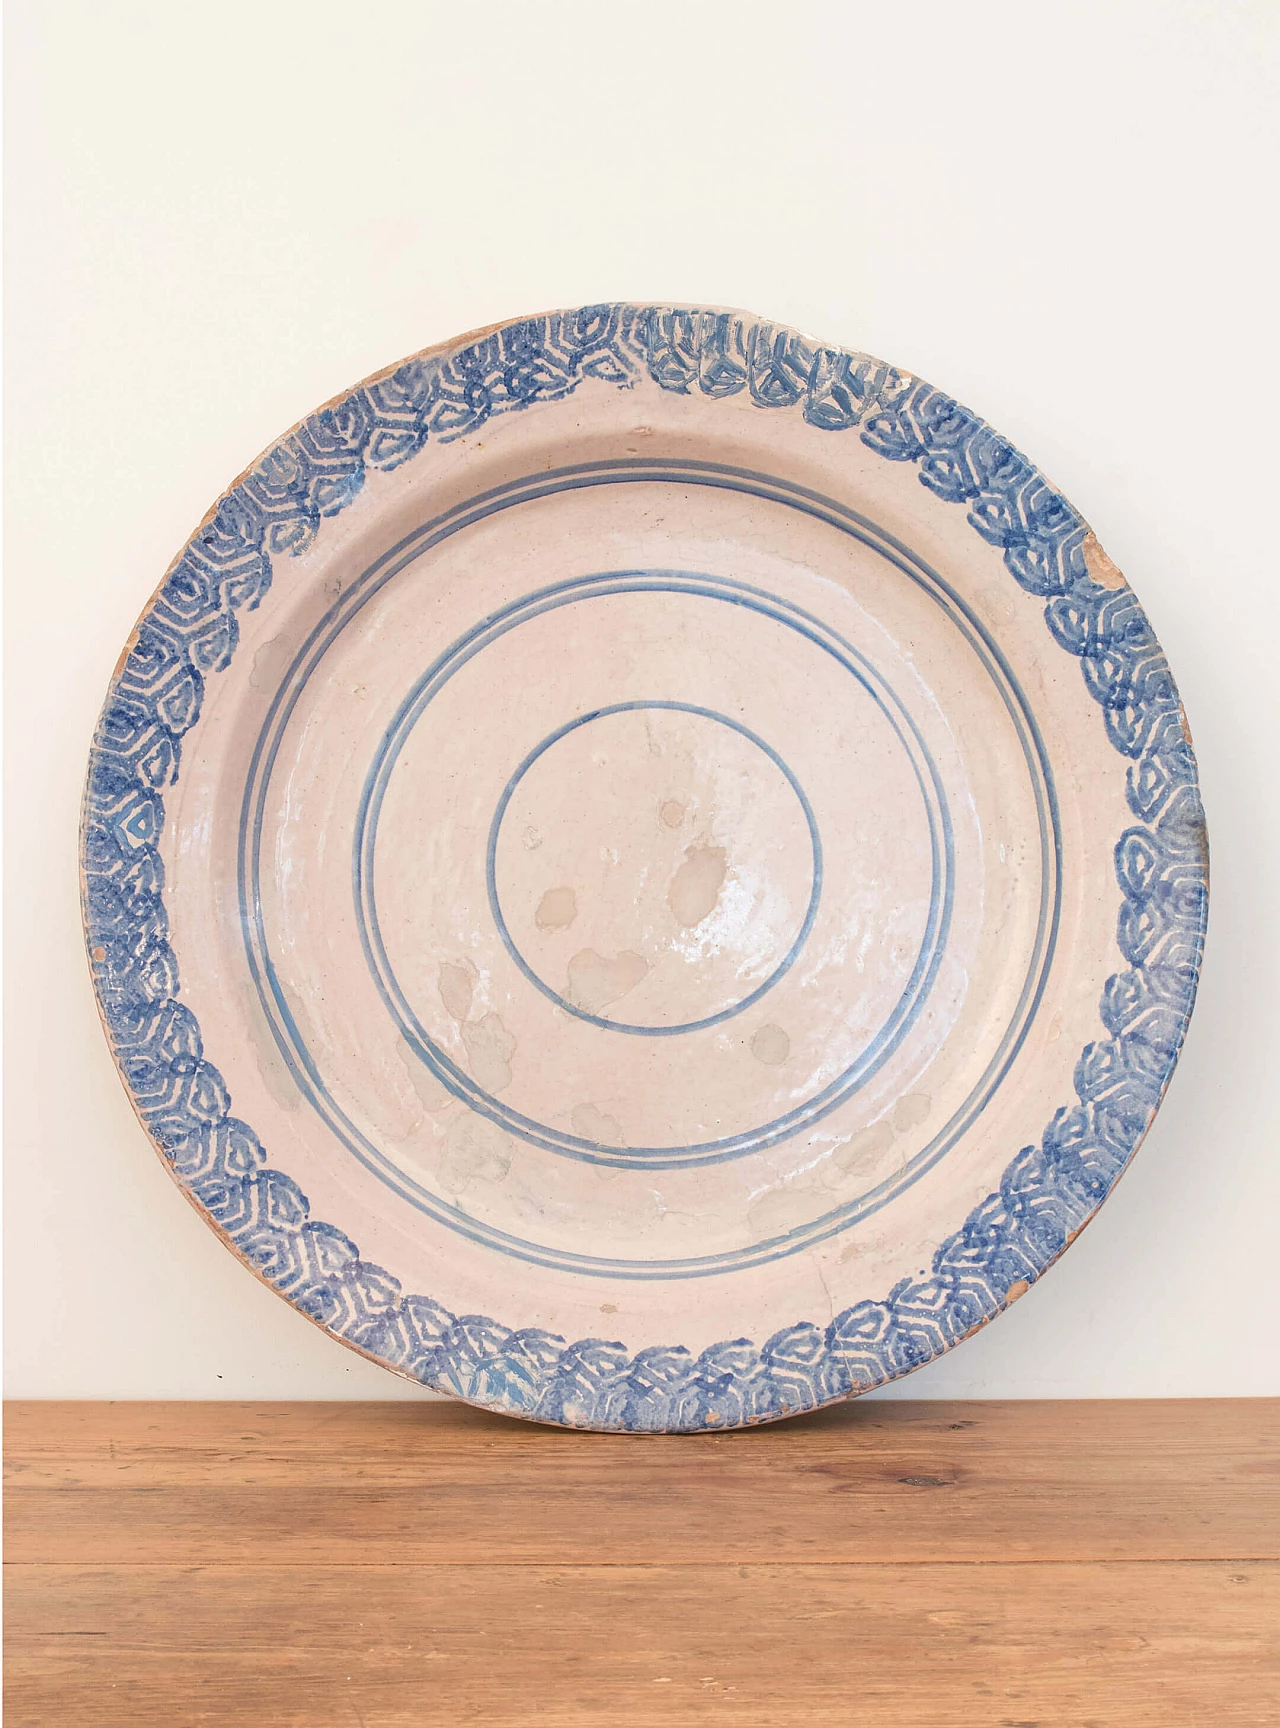 Laterza ceramic plate, 18th century 1084712